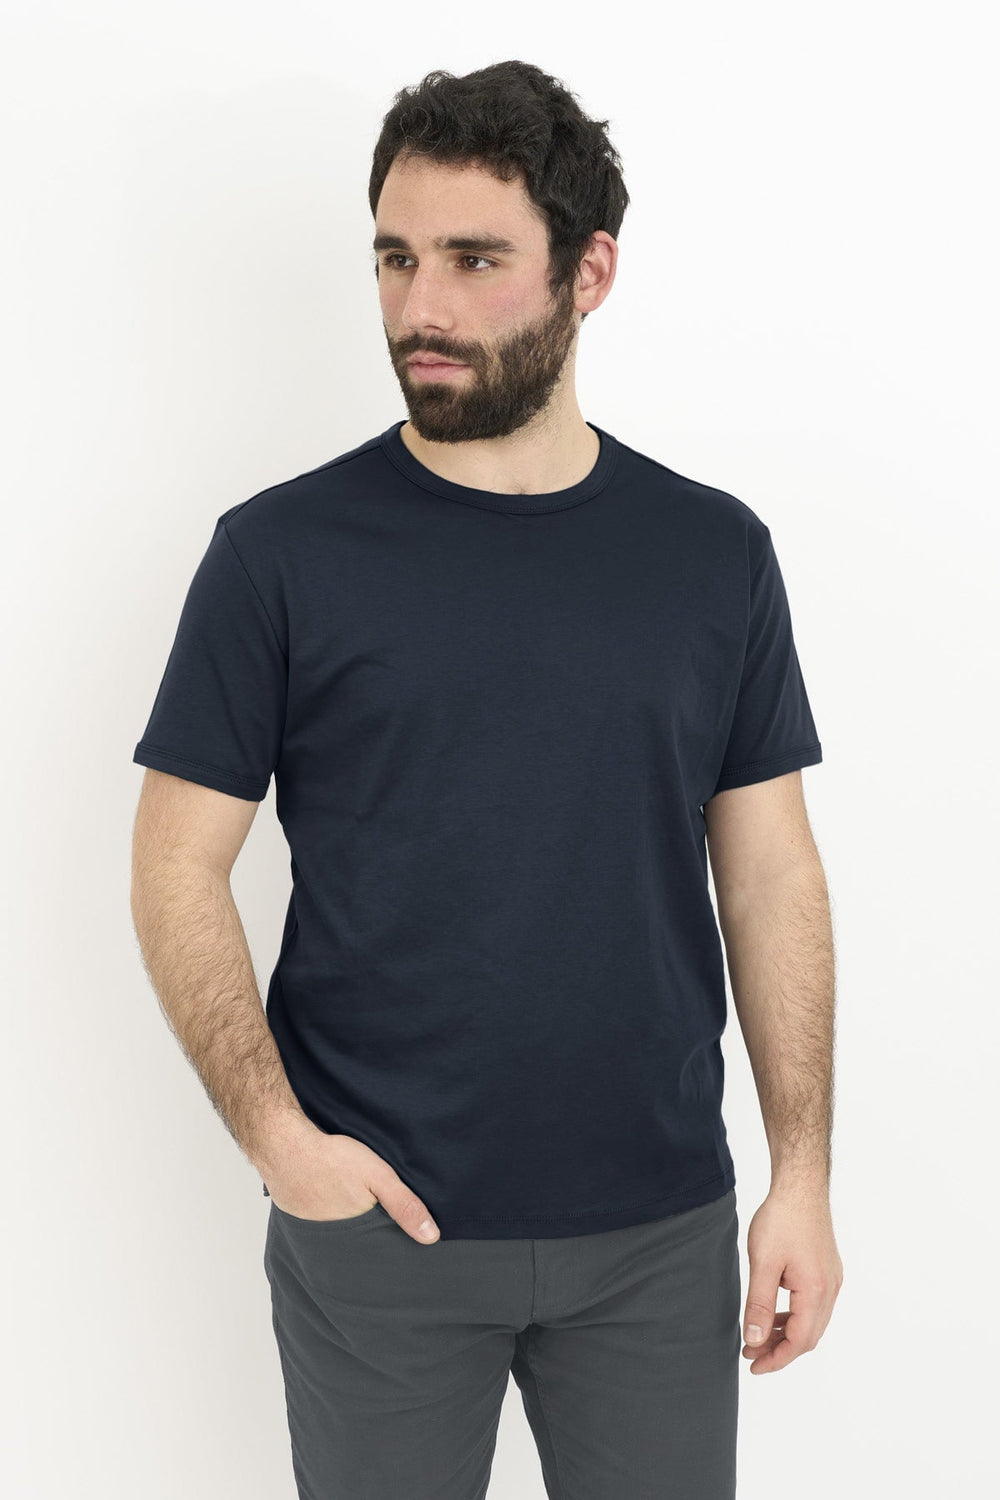 T-Shirts for Short Men | Under 510 – Under 5'10